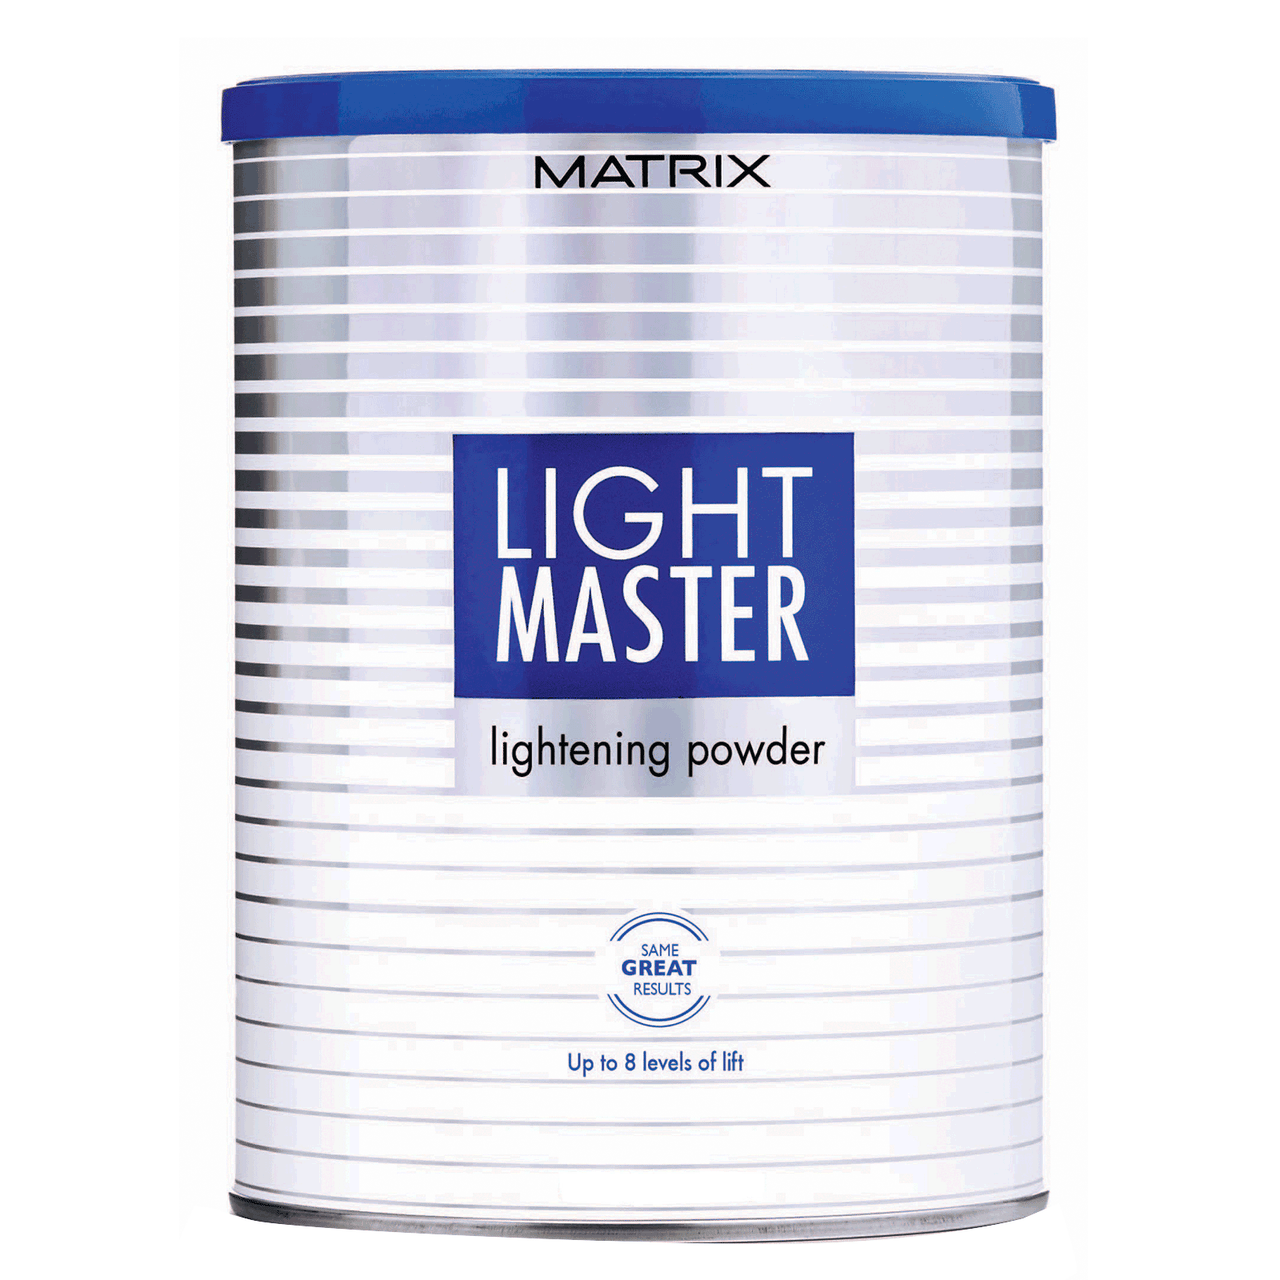 Matrix Light Master Lightening Powder 2 lb